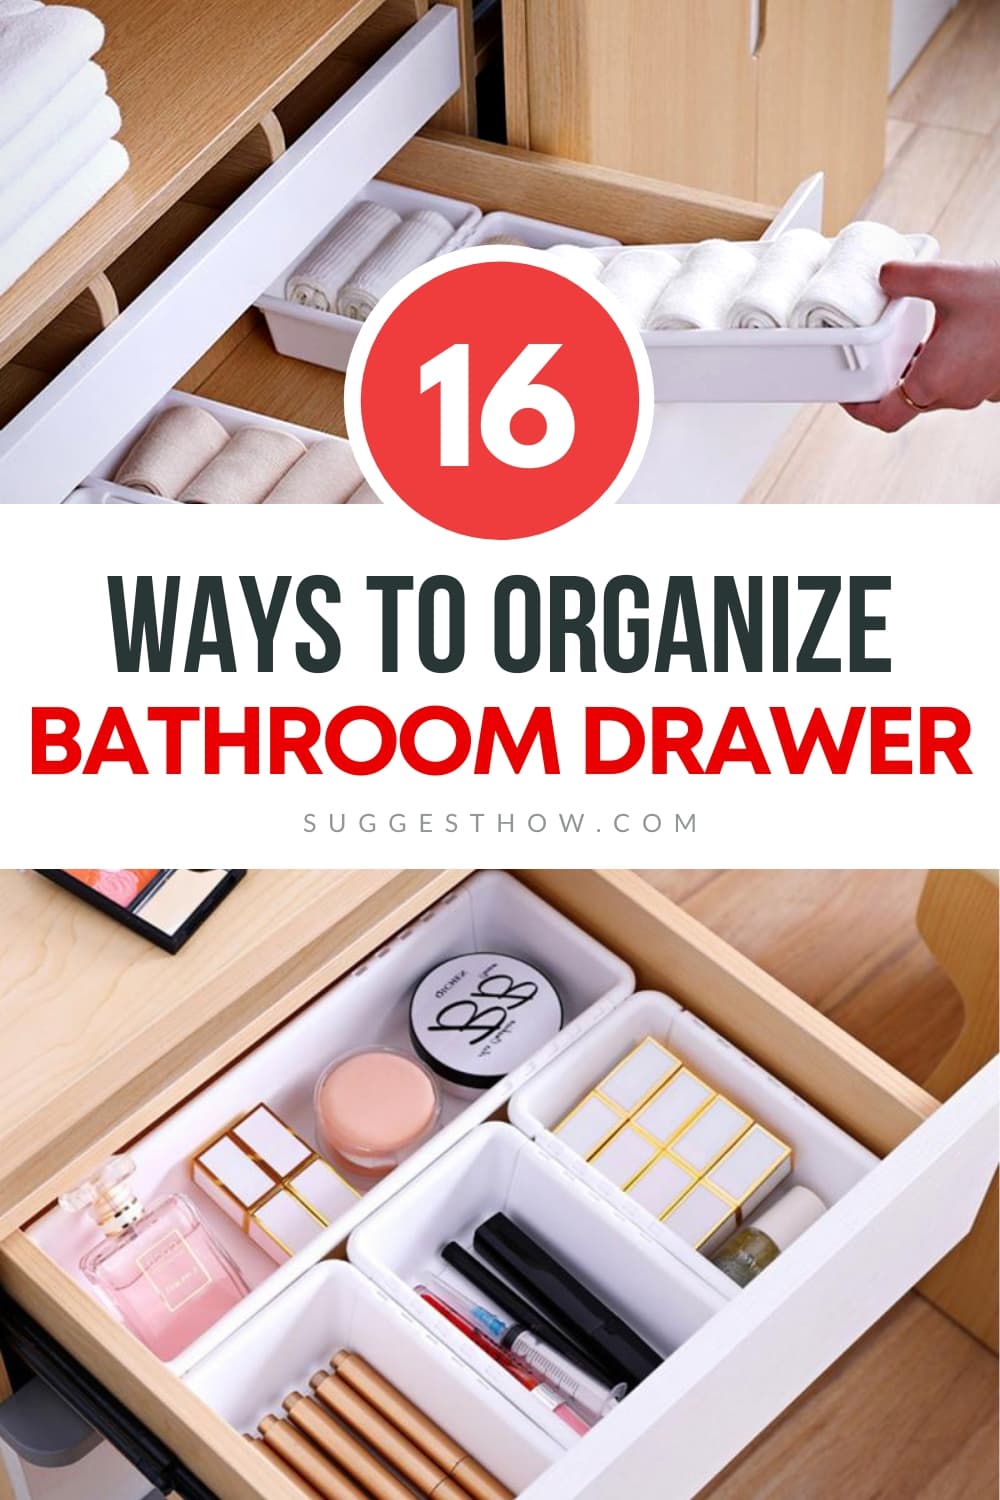 Organized Bathroom Drawers